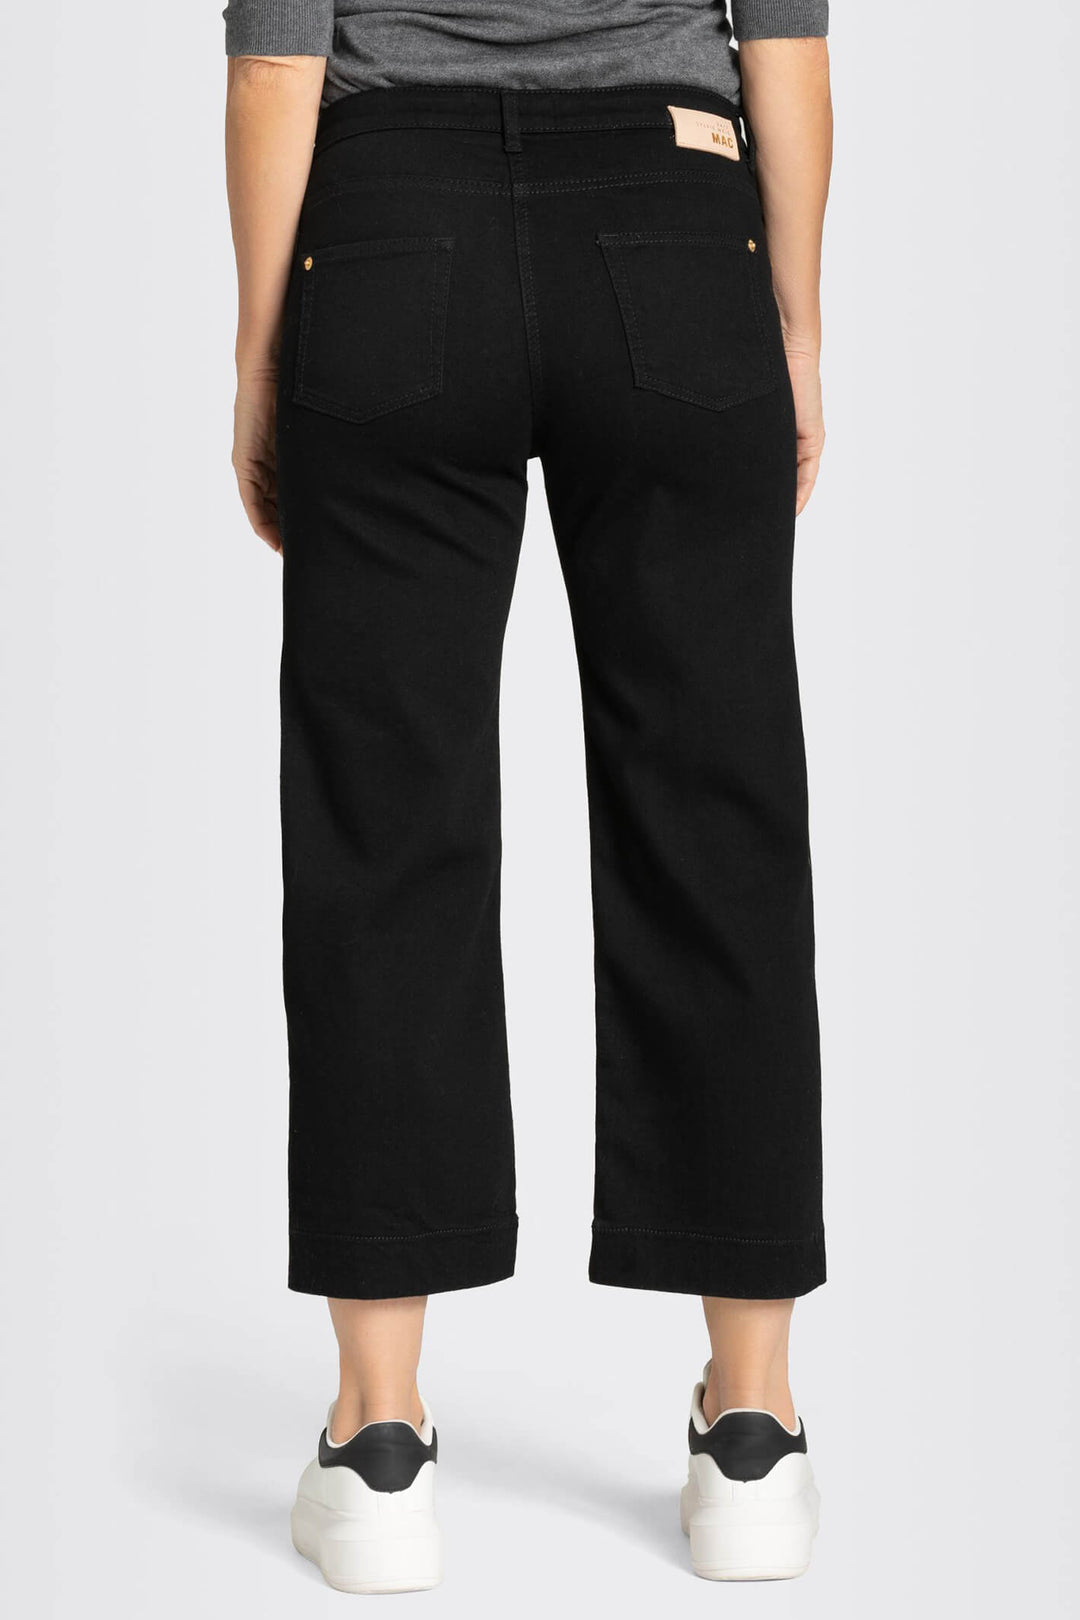 Mac Rich Culotte 2630-90-0389L Black Stretch Denim Jeans - Olivia Grace Fashion